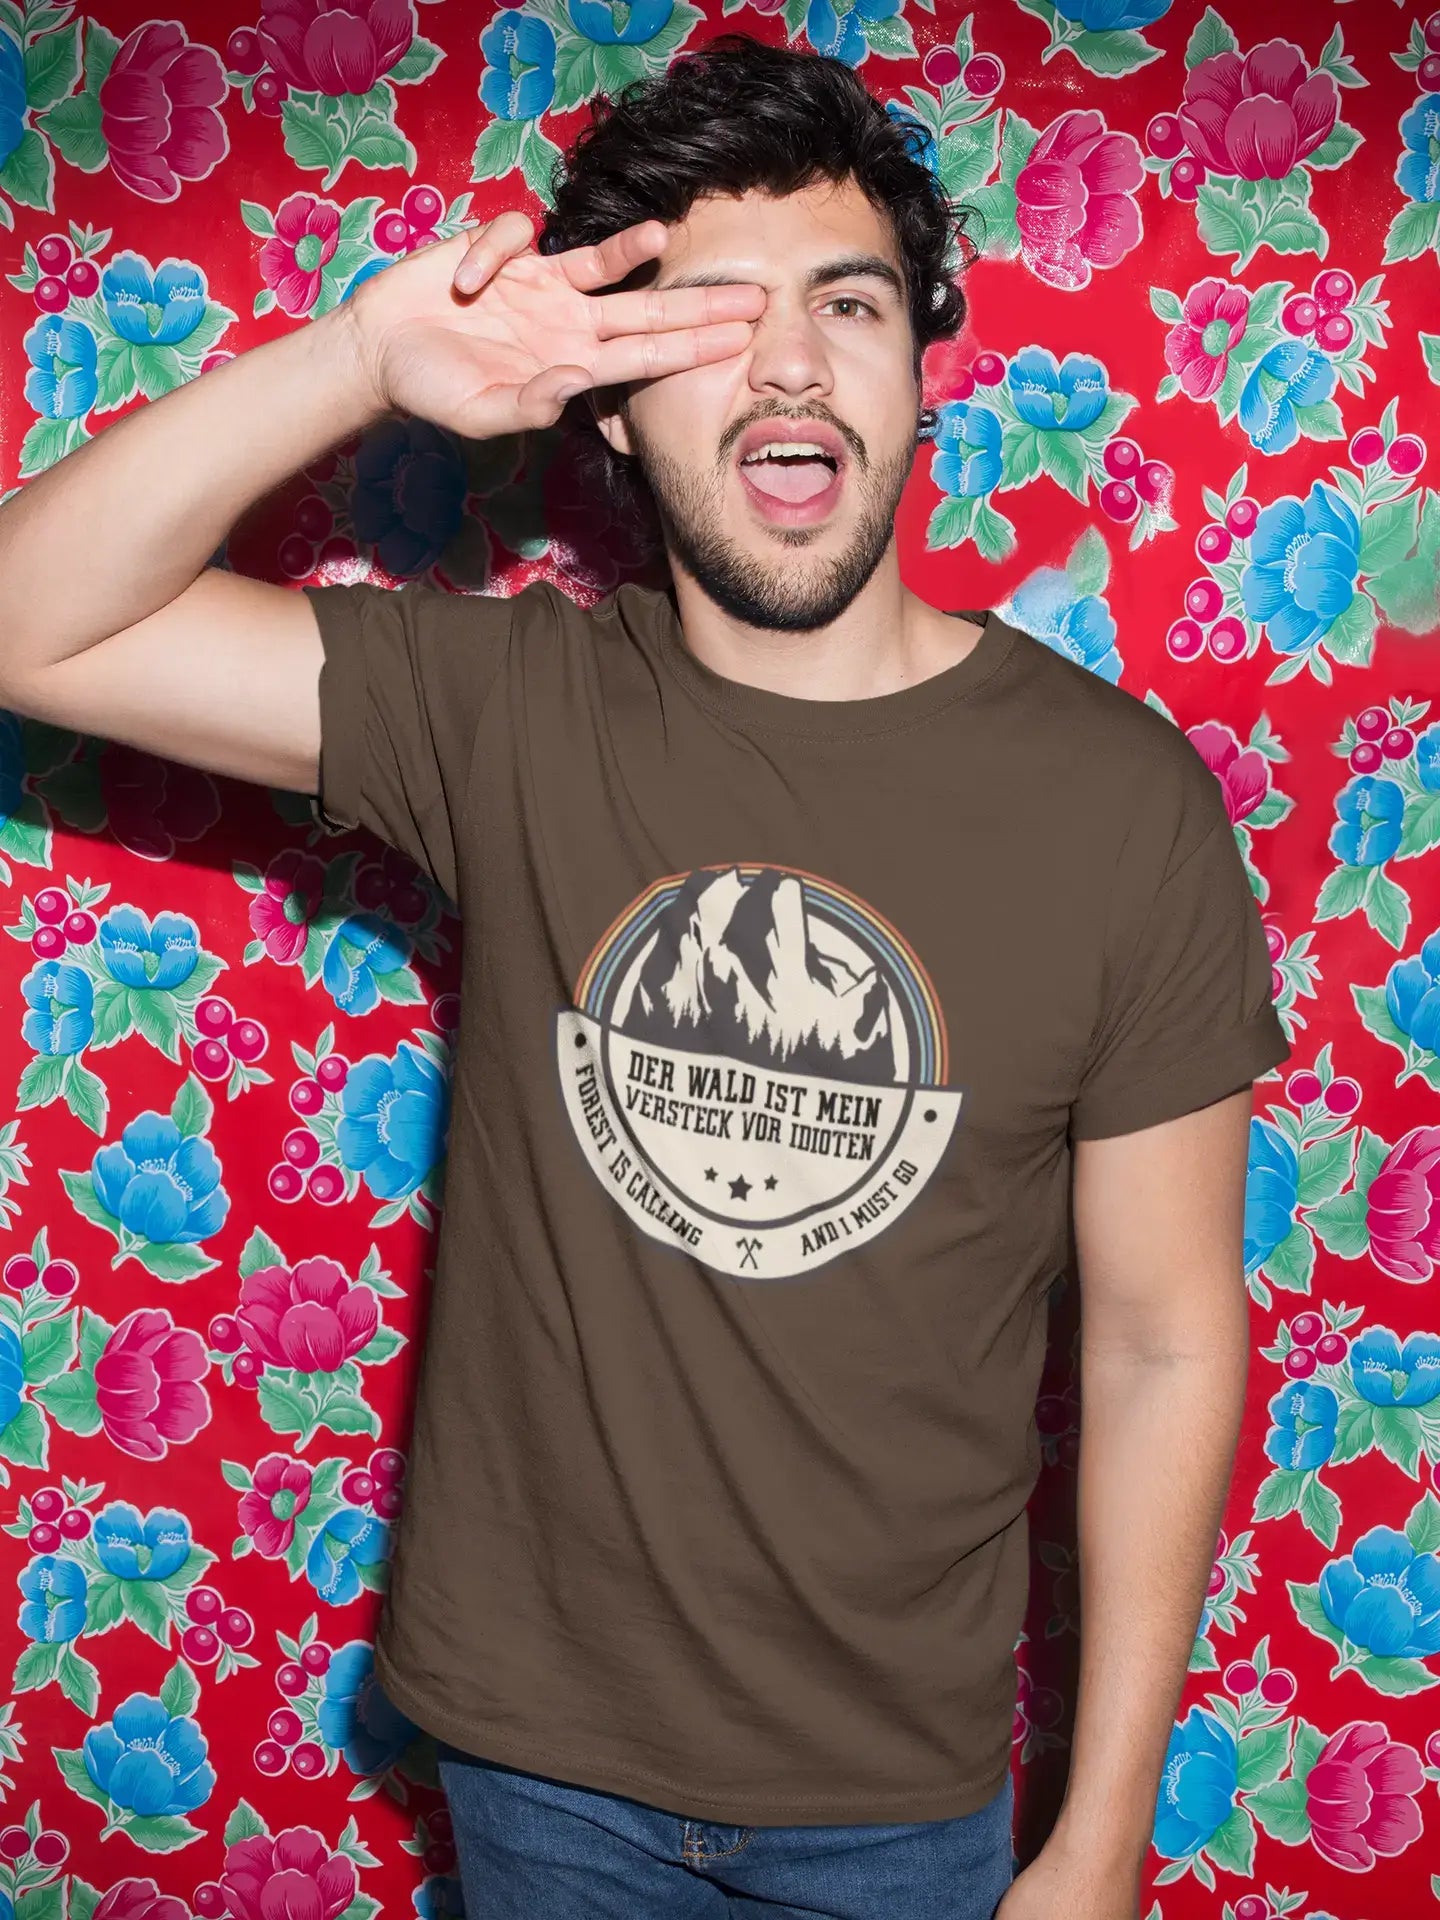 Men's Graphic T-Shirt Der Wald ist Mein Versteck vor Idioten Gift Idea